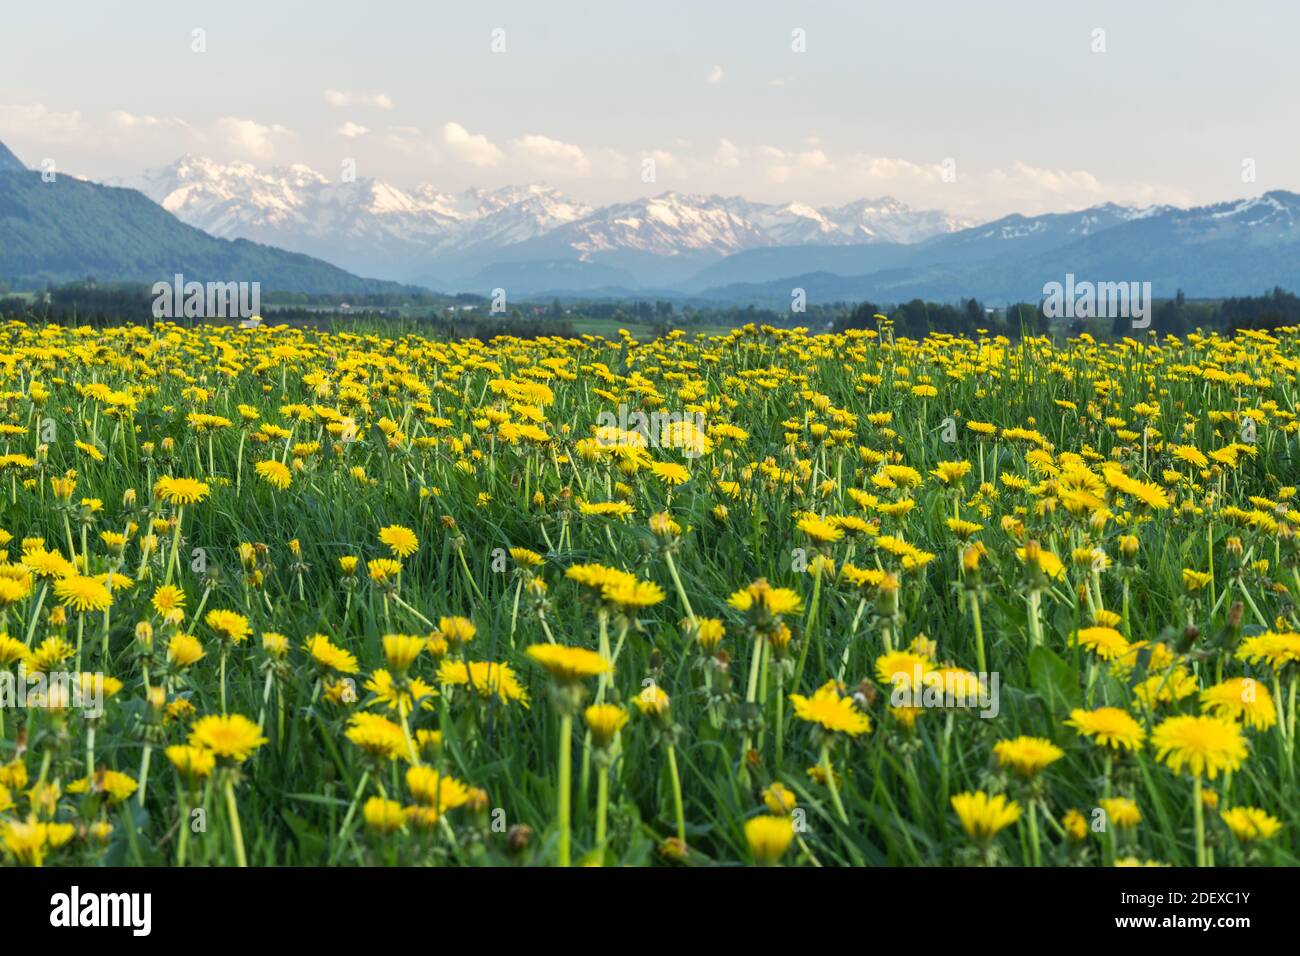 Gelbe Blumenwiese und schöne Aussicht auf schneebedeckte Berge. Kempten, Bayern, Alpen, Allgau, Deutschland. Stockfoto